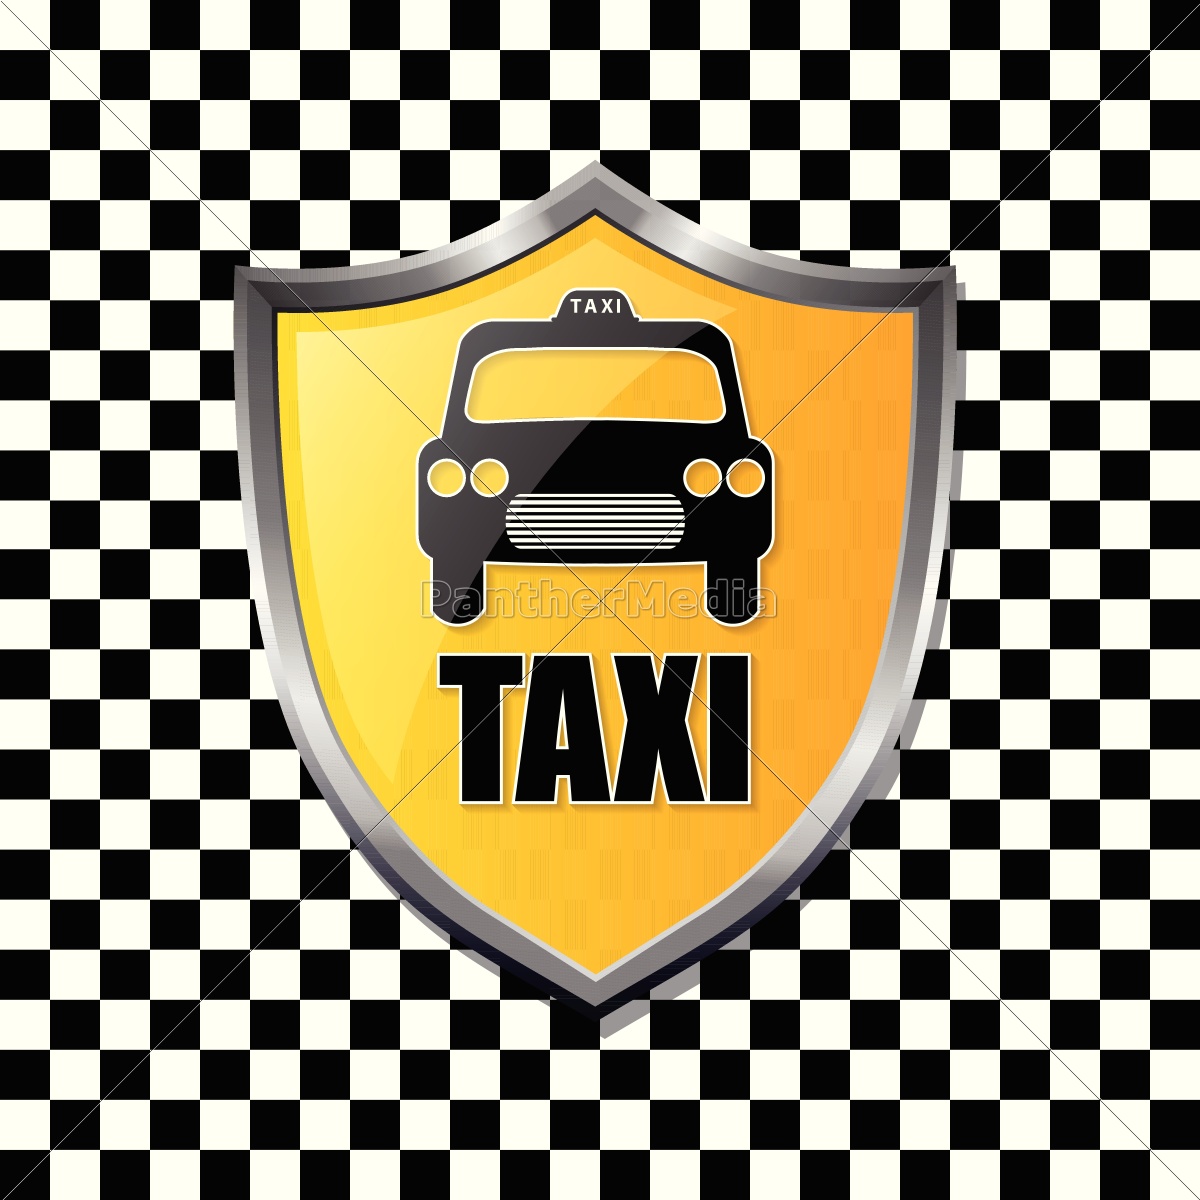 taxi schild abzeichen auf karierten hintergrund - Stockfoto #14659479